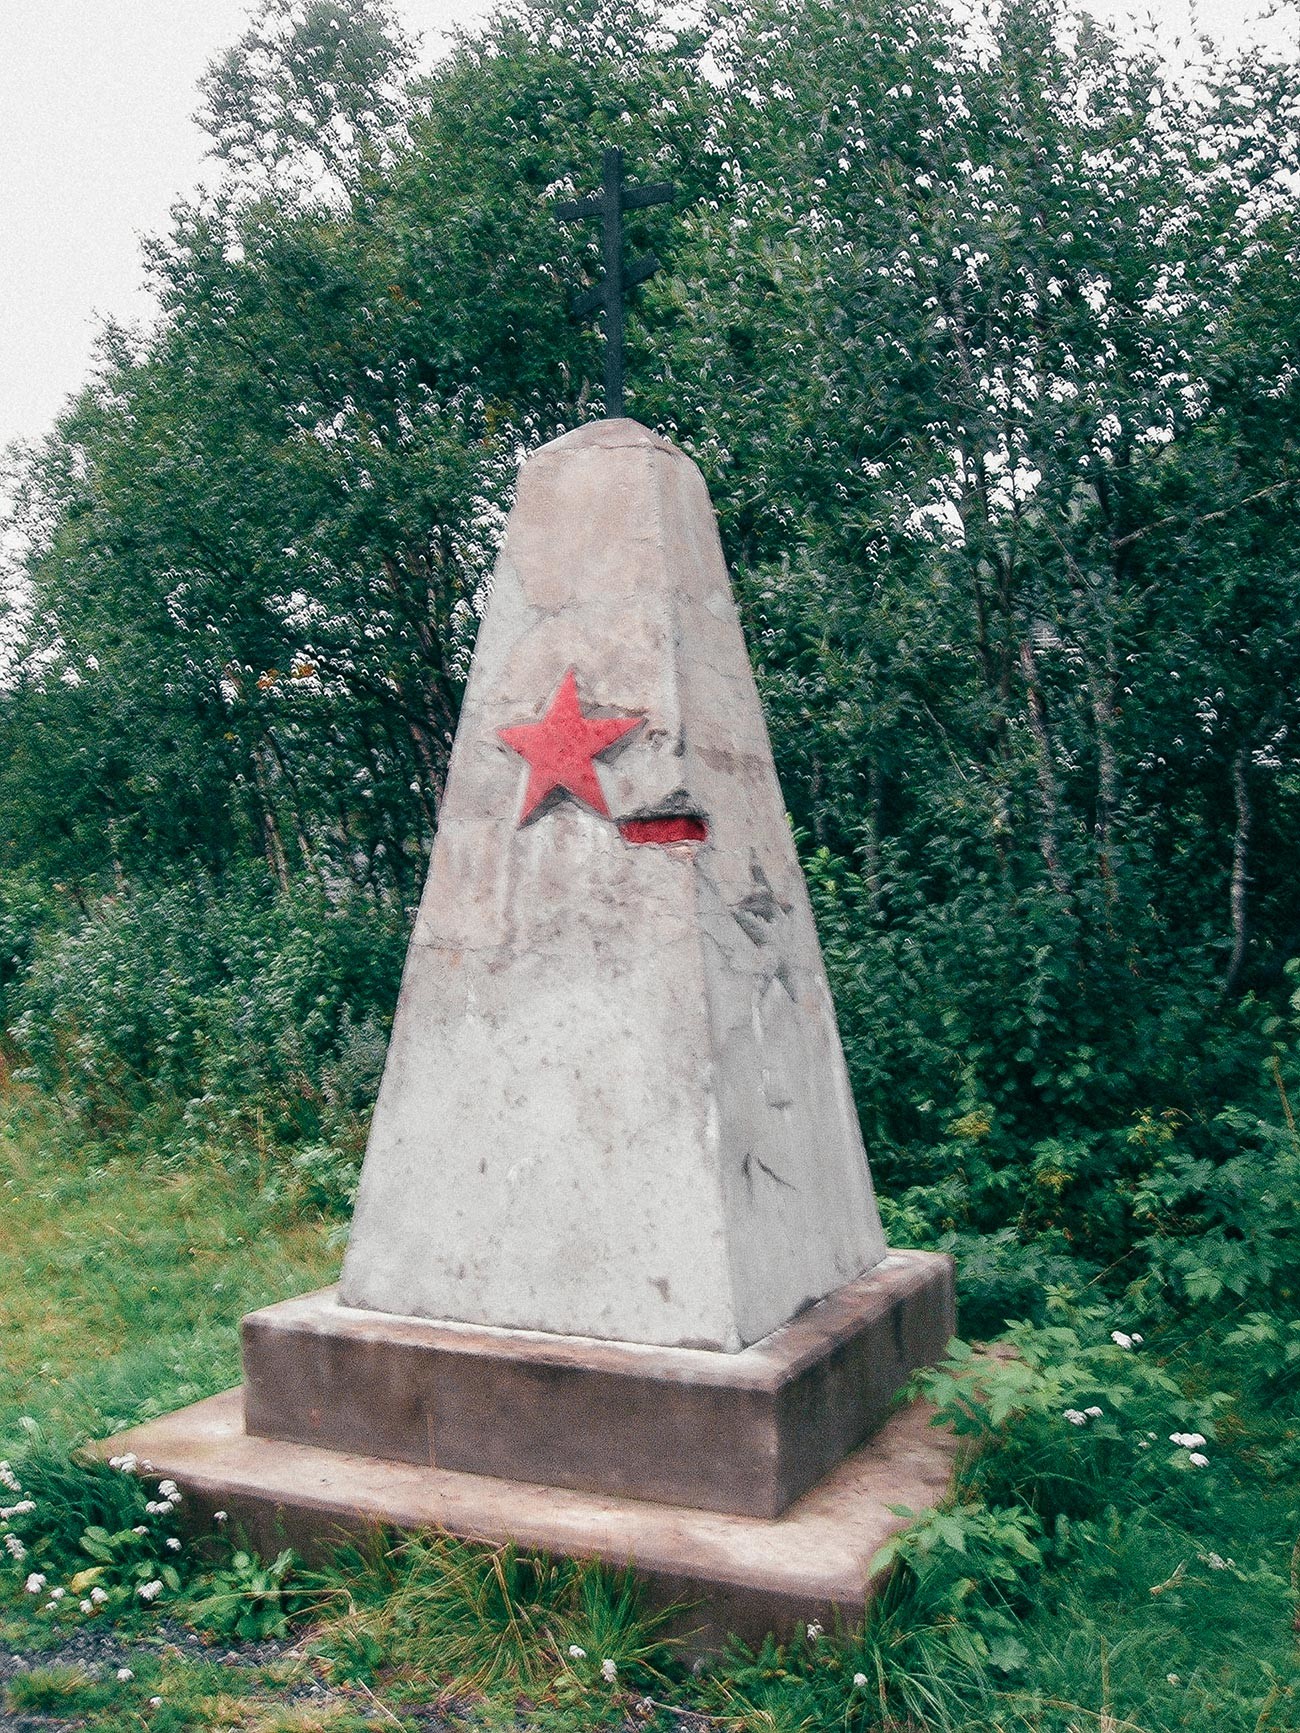 Паметник на около 5000 съветски затворници, построили частта на Рана от Nordlandsbanen (железопътна линия Nordland) с робски труд за нацистките окупатори по време на Втората световна война